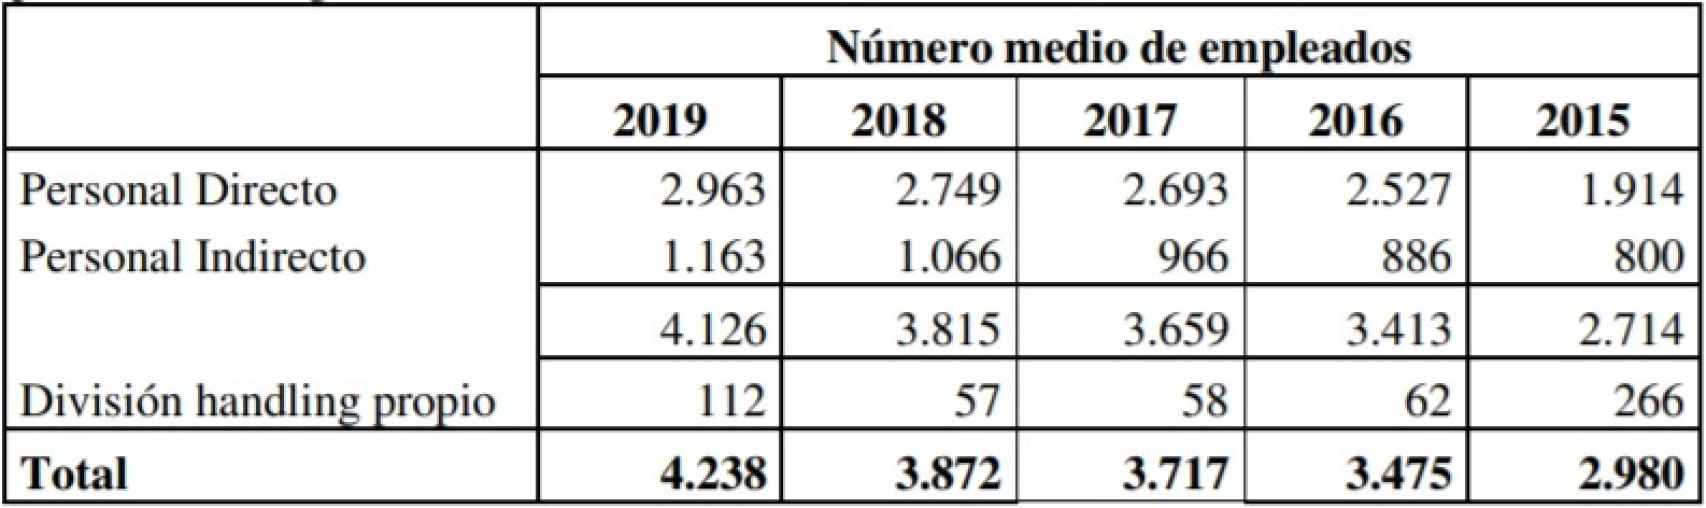 Evolución del número de empleados de Air Europa en 2019. Fuente: Registro Mercantil.